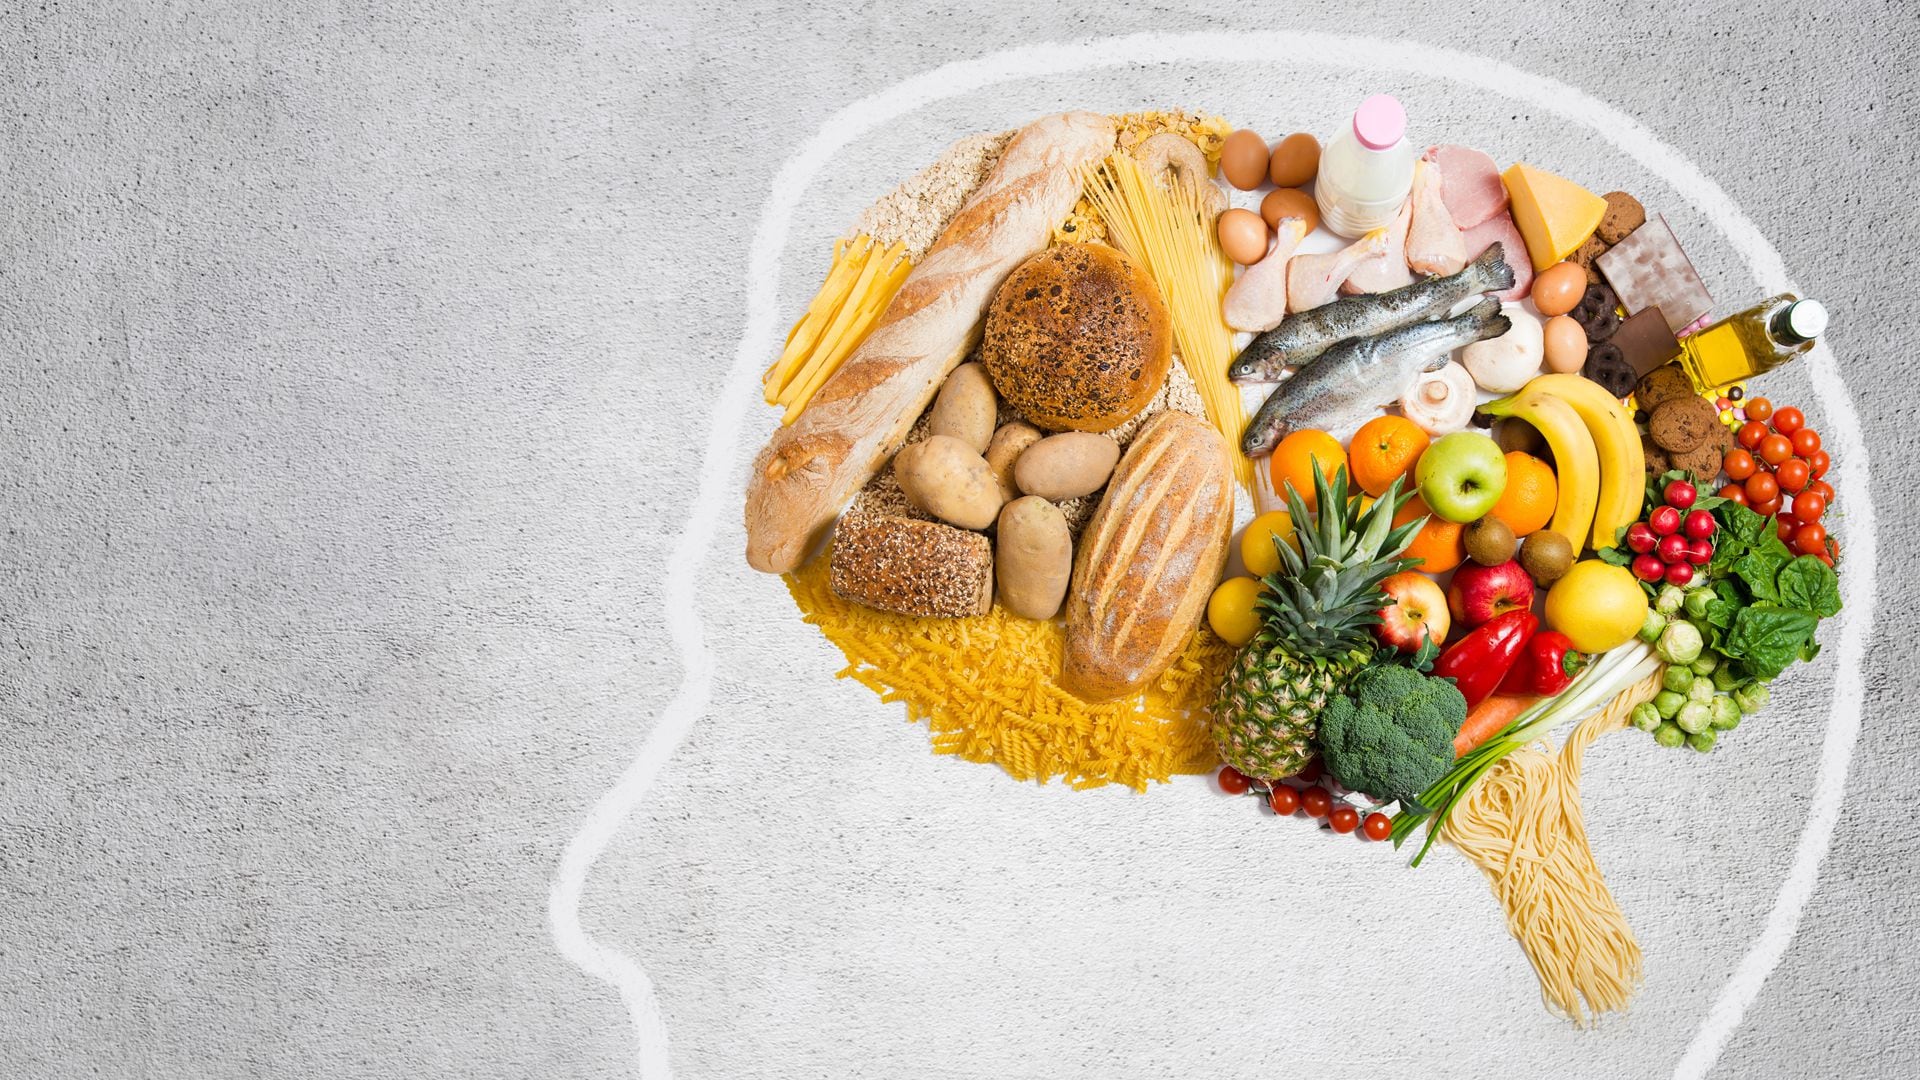 Los alimentos grasos desencadenan actividad en la corteza orbitofrontal del cerebro, que participa en el procesamiento de recompensas (Getty)